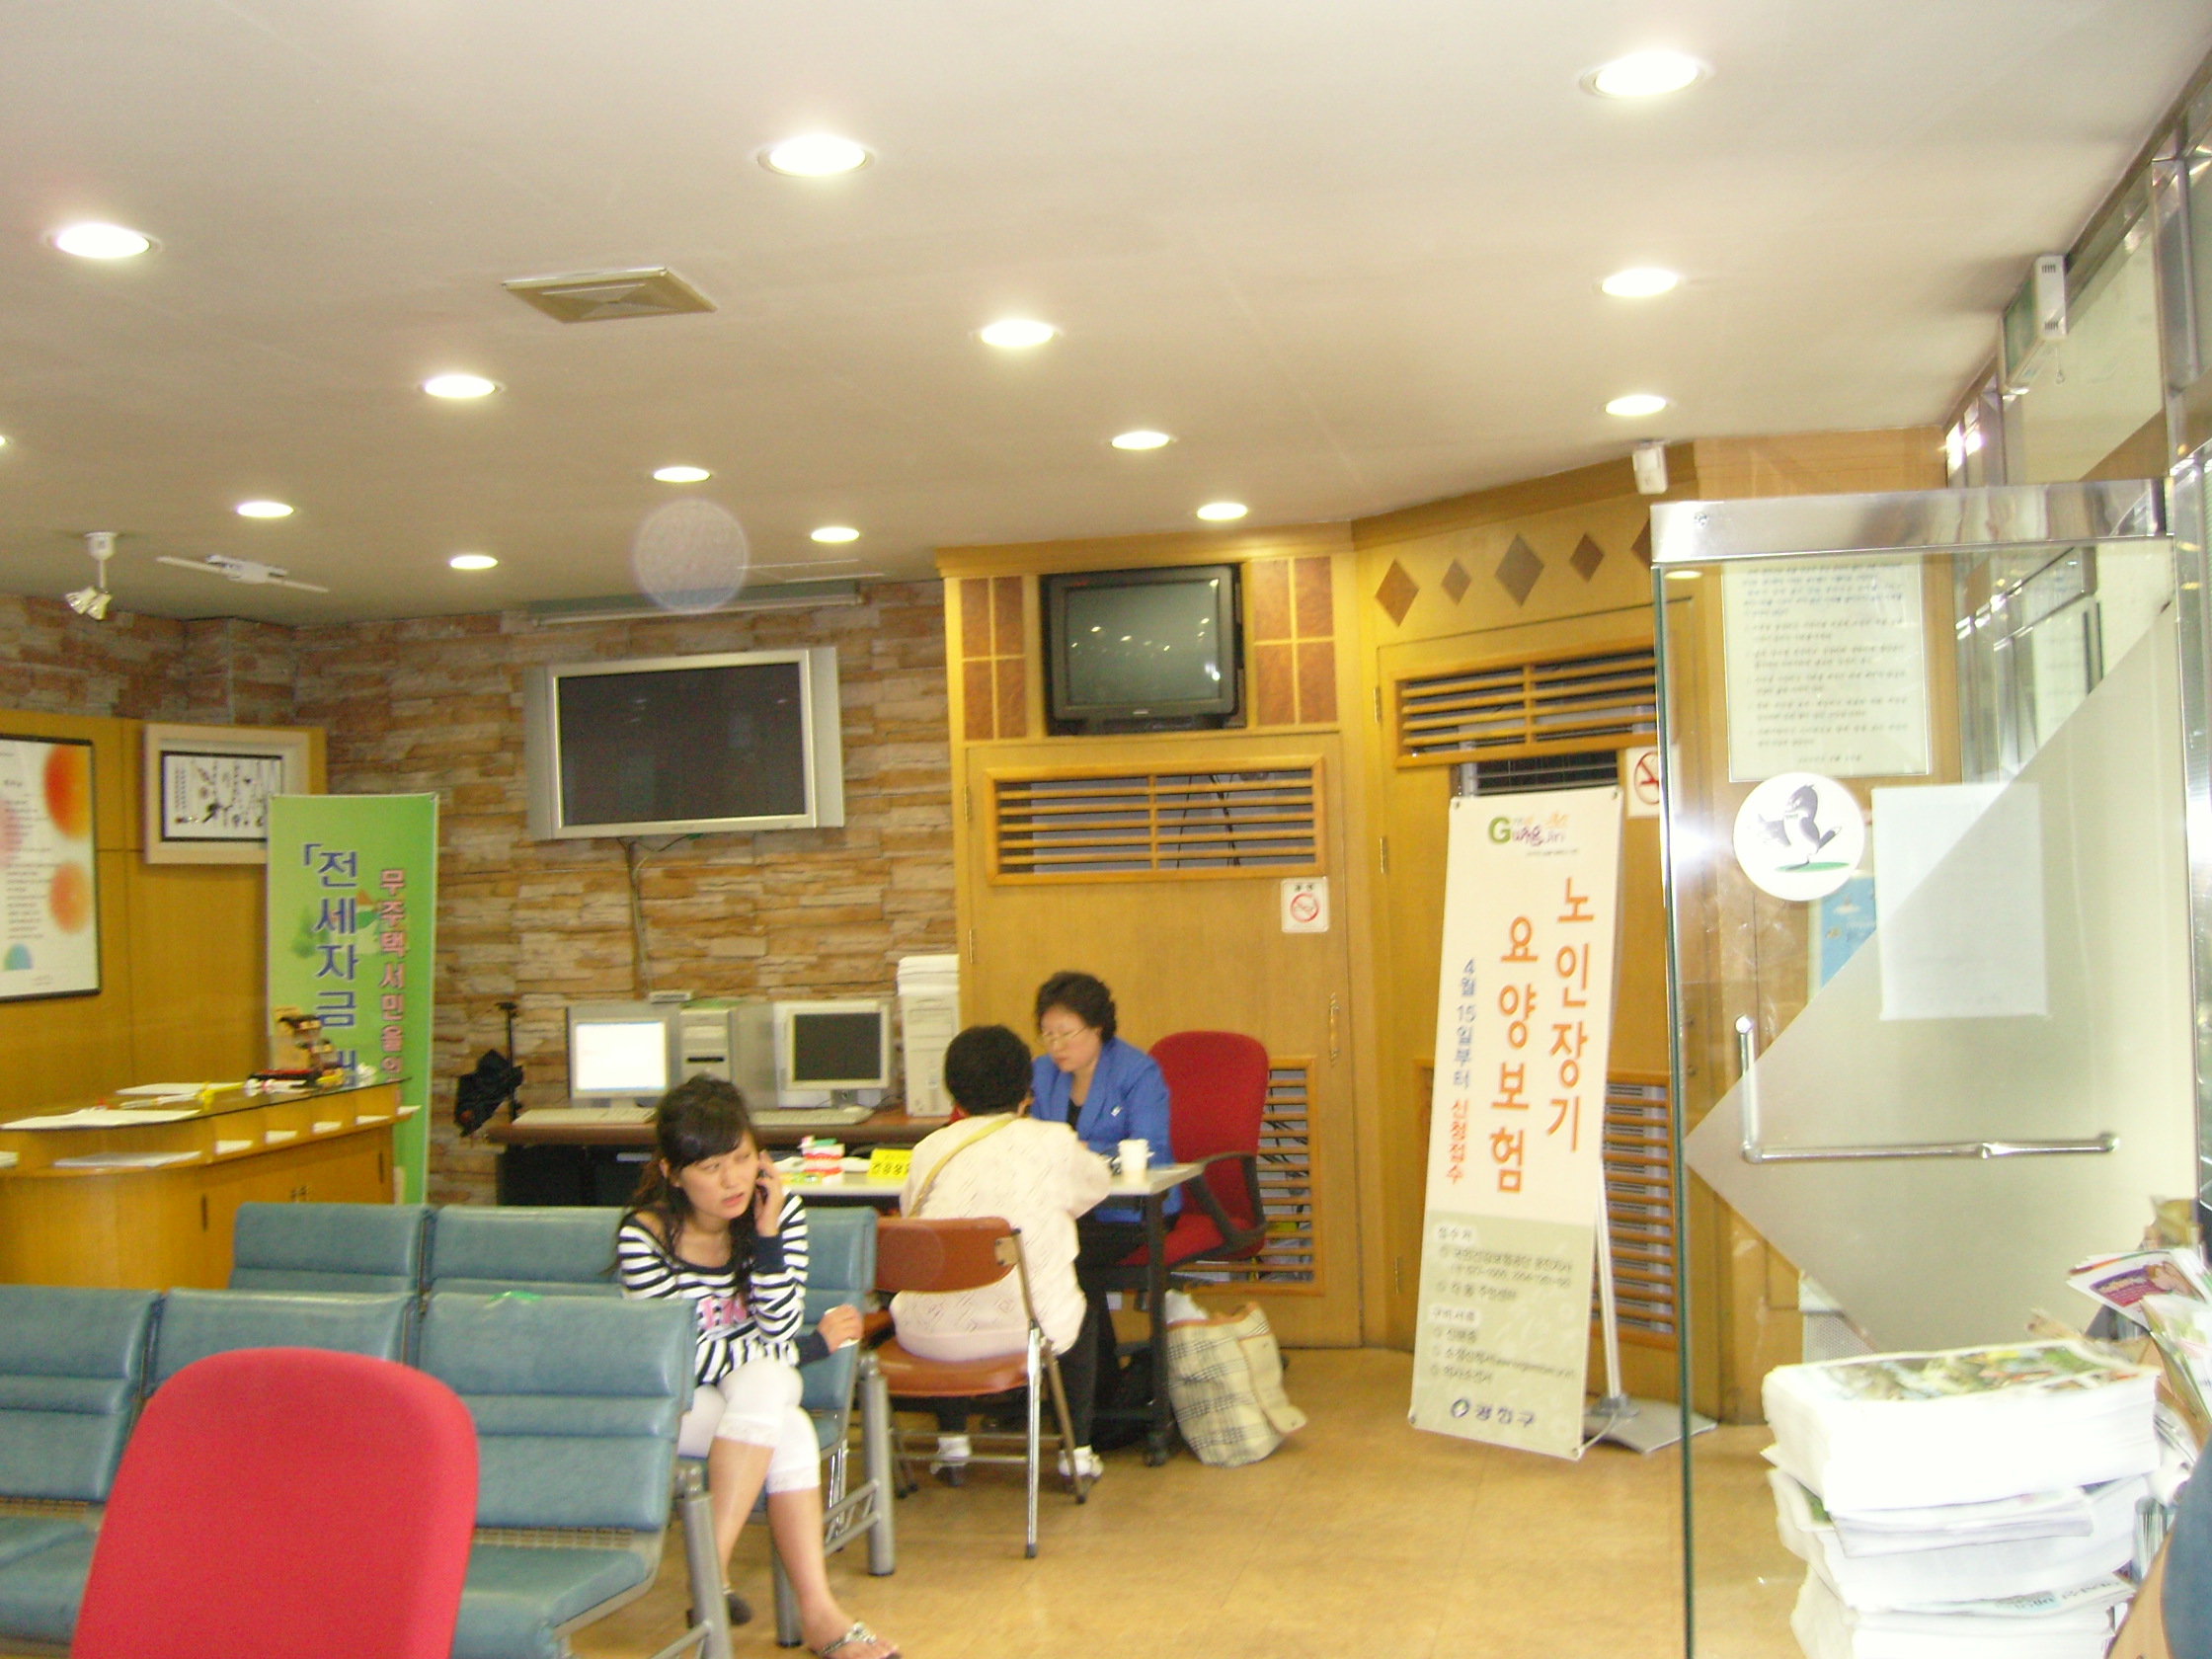 구의제1동주민센터 건강의날 무료보건의료서비스전경(2008. 5. 20)